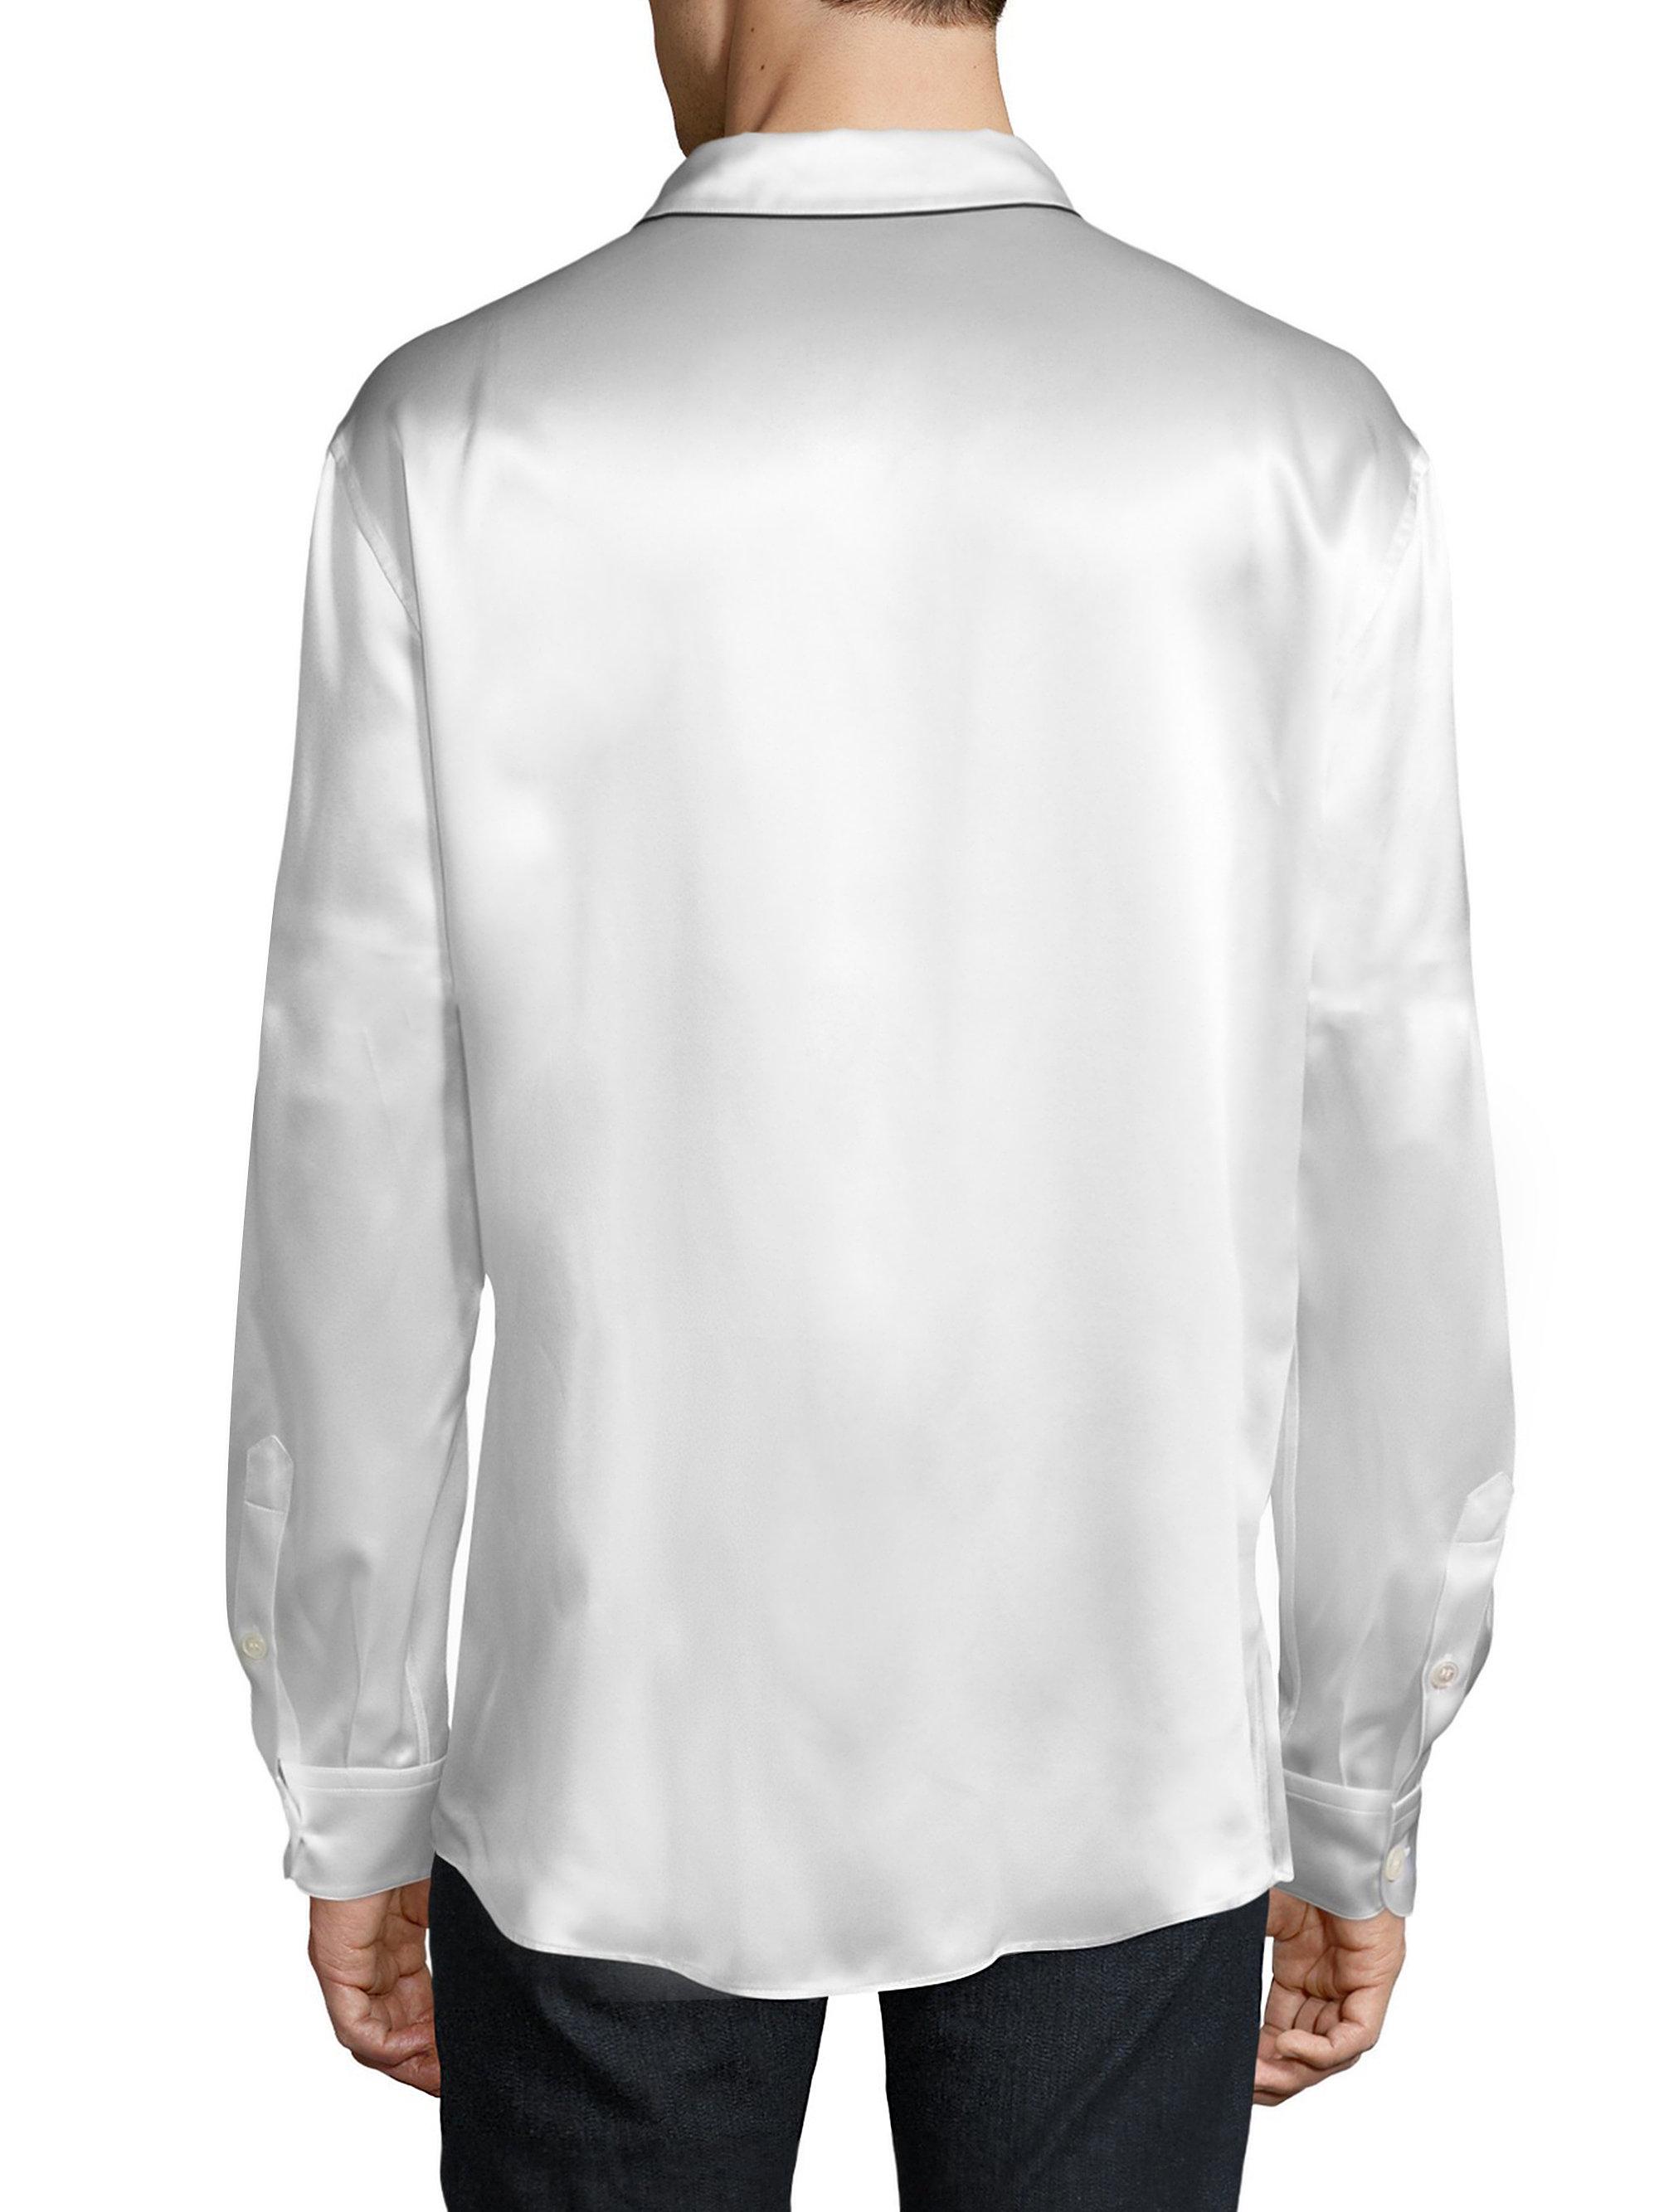 Perry Ellis Short Sleeve 100/% Cotton Sport Shirt NWT $69-75 Plaid Paisley Square